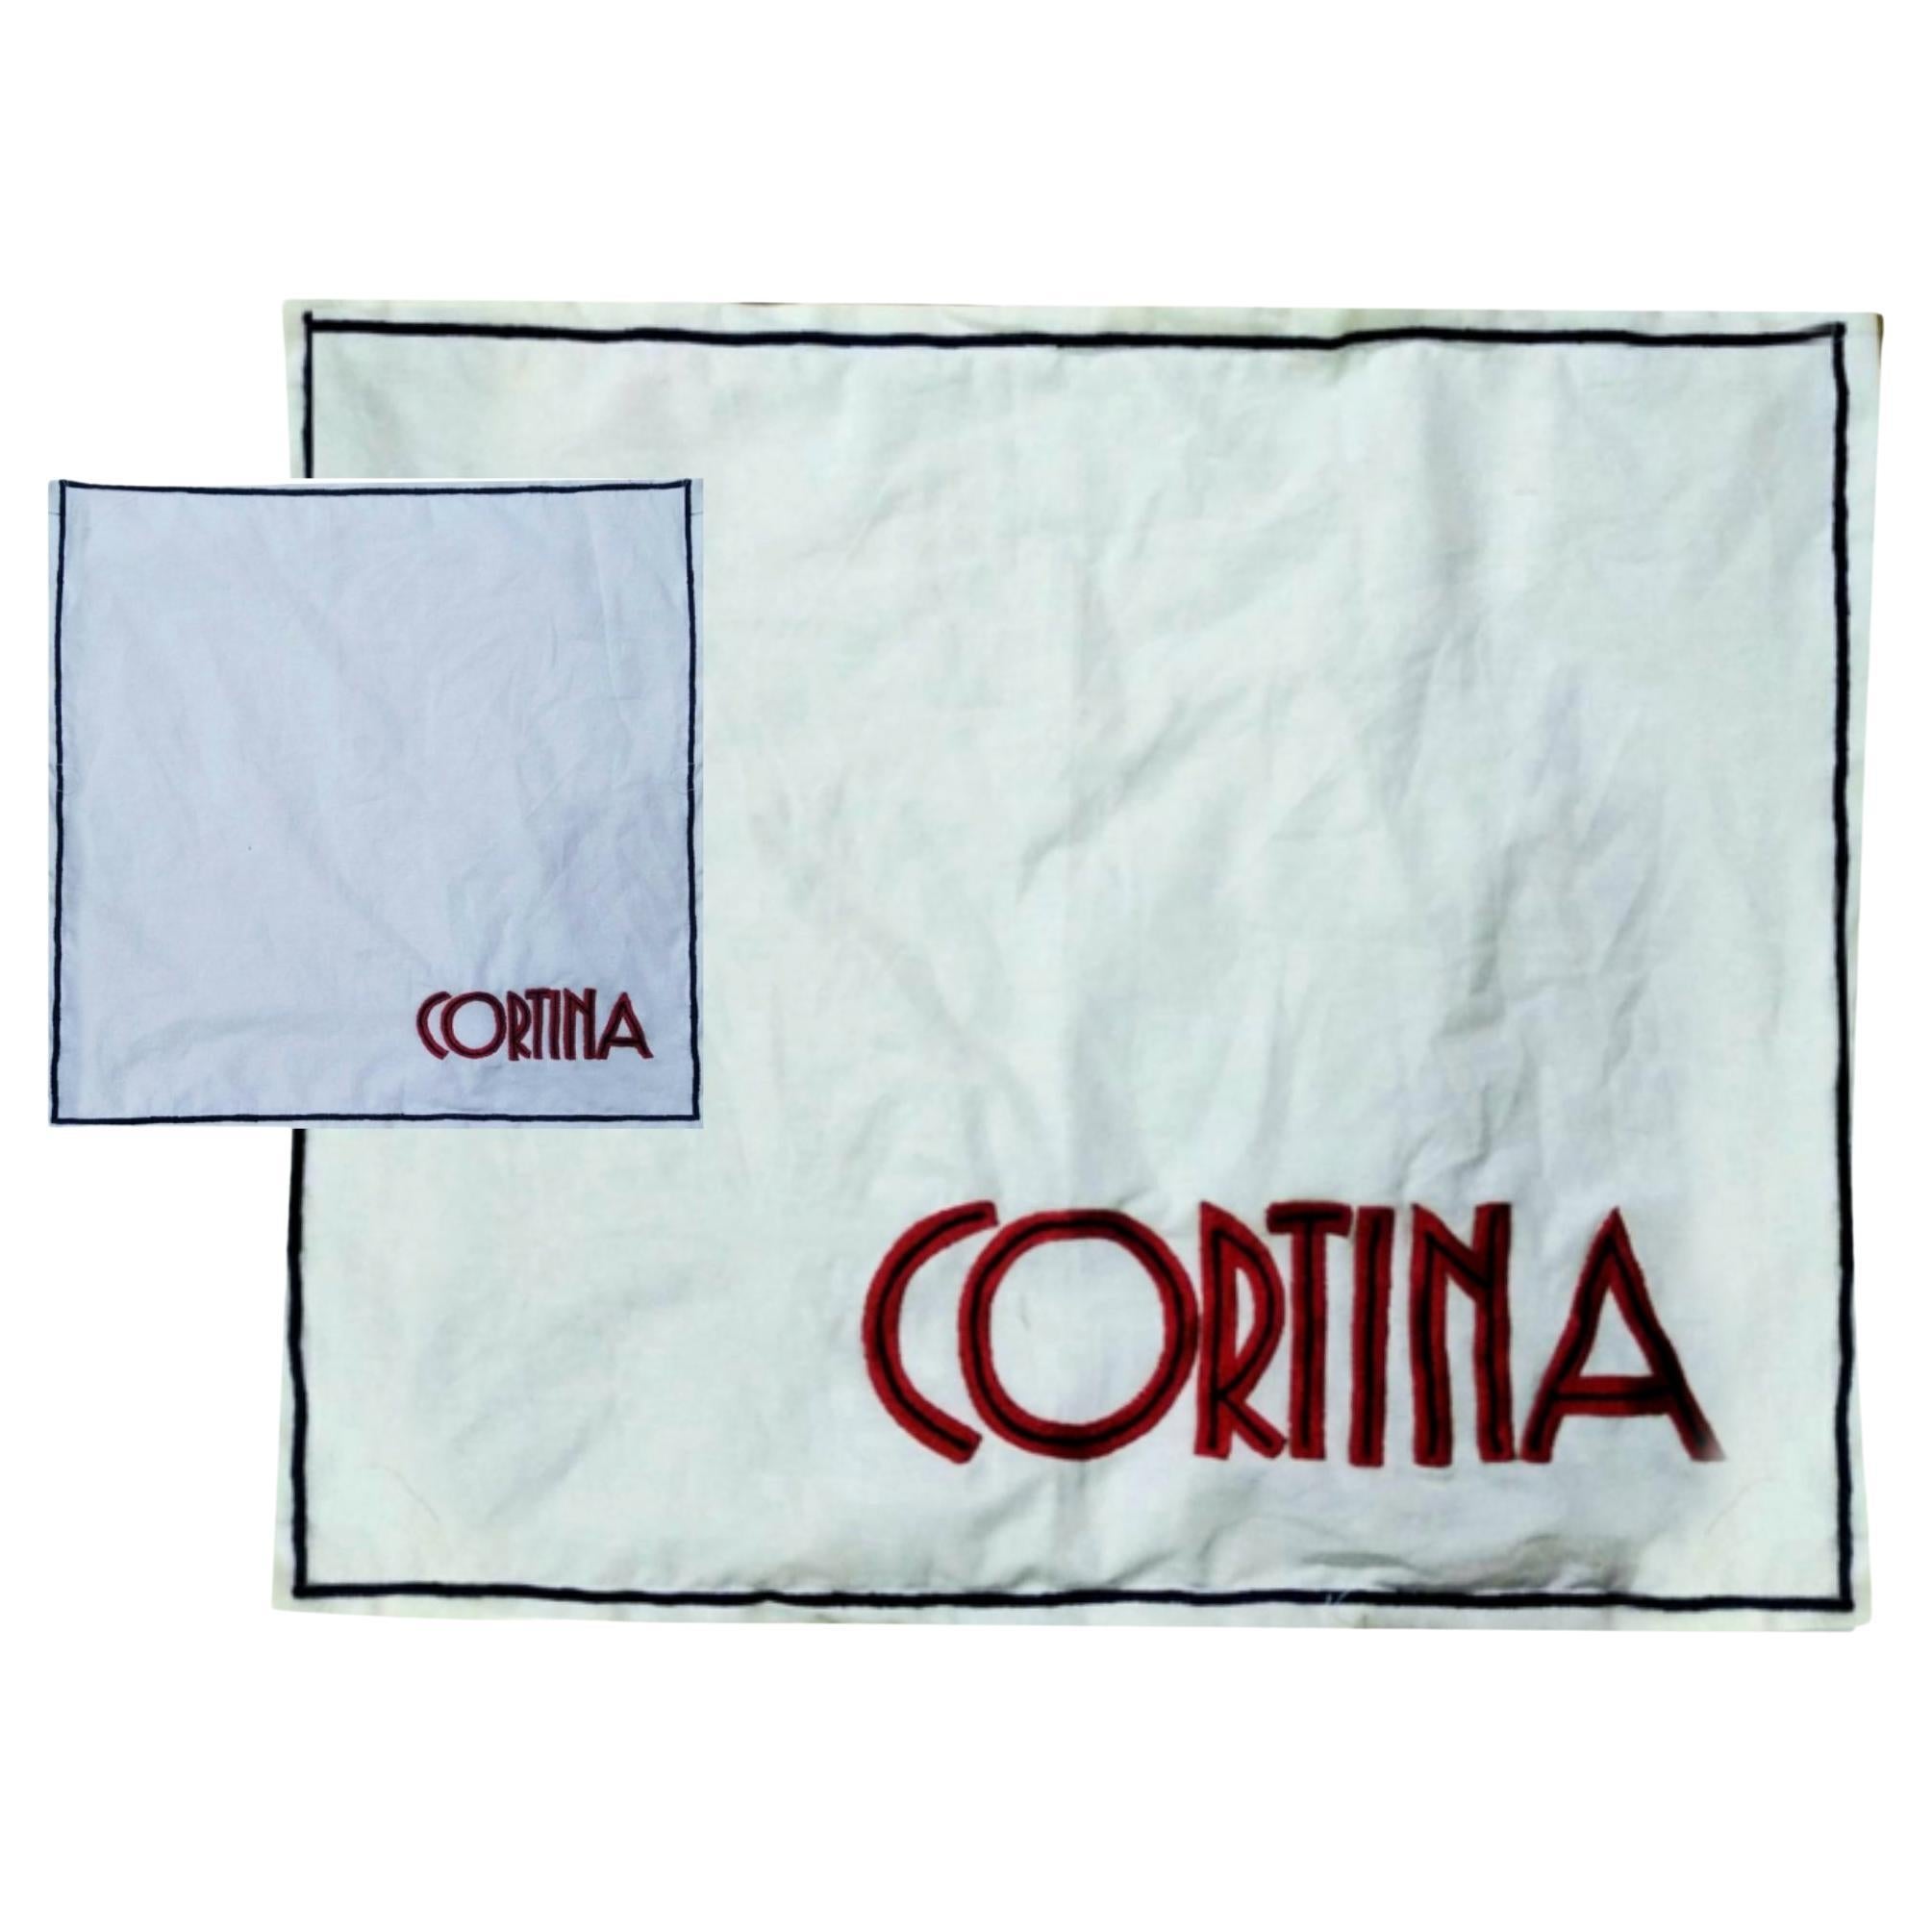 Handbestickter Kortina-Baumwoll-Tisch und Servietten